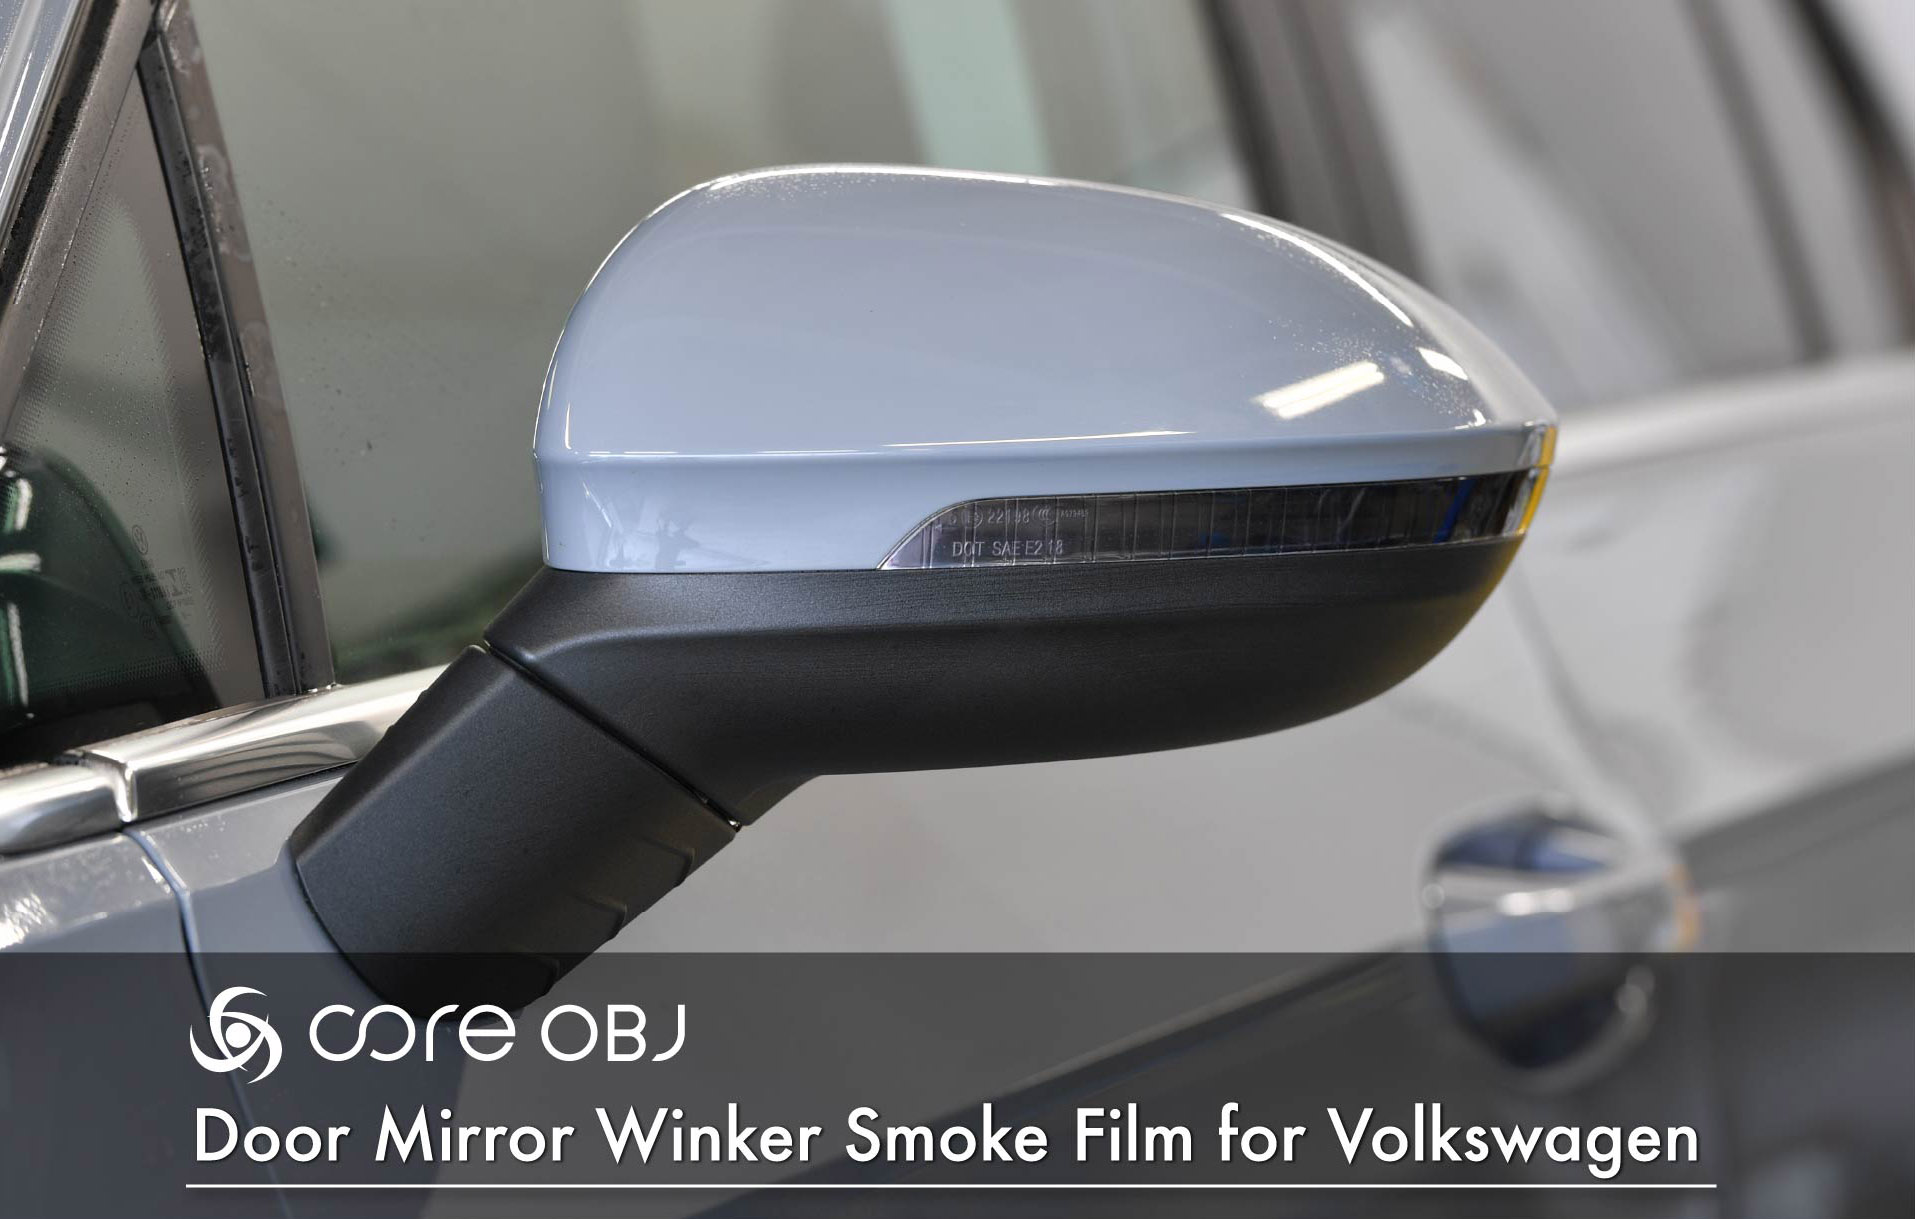 Door Mirror Winker Smoke Film / core obj select